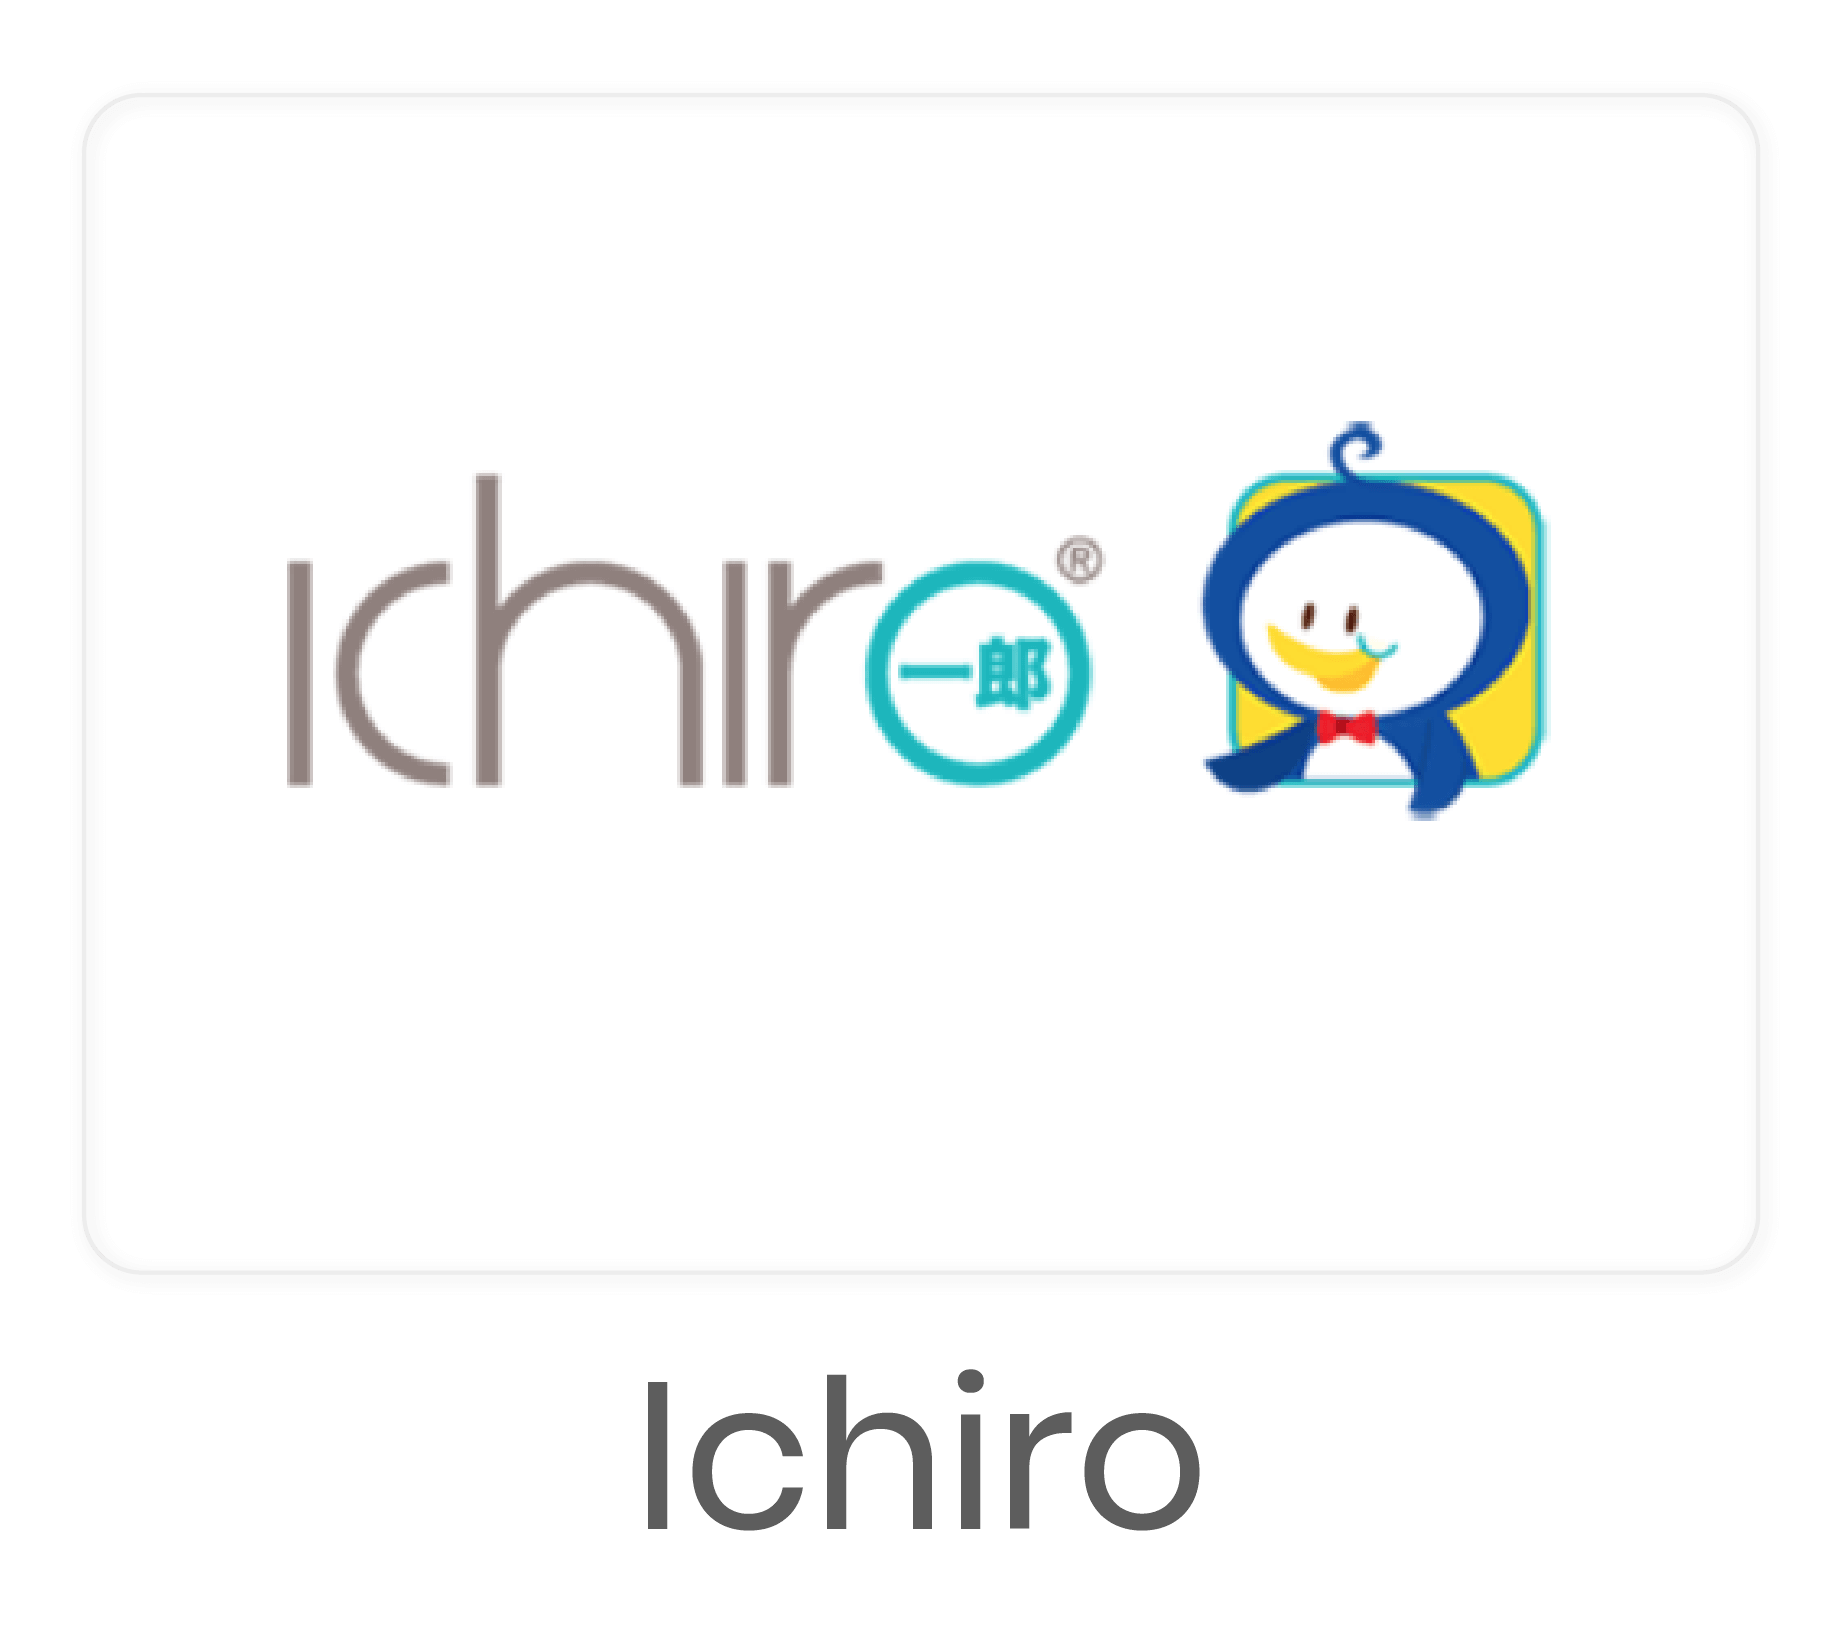 Ichiro-48.png